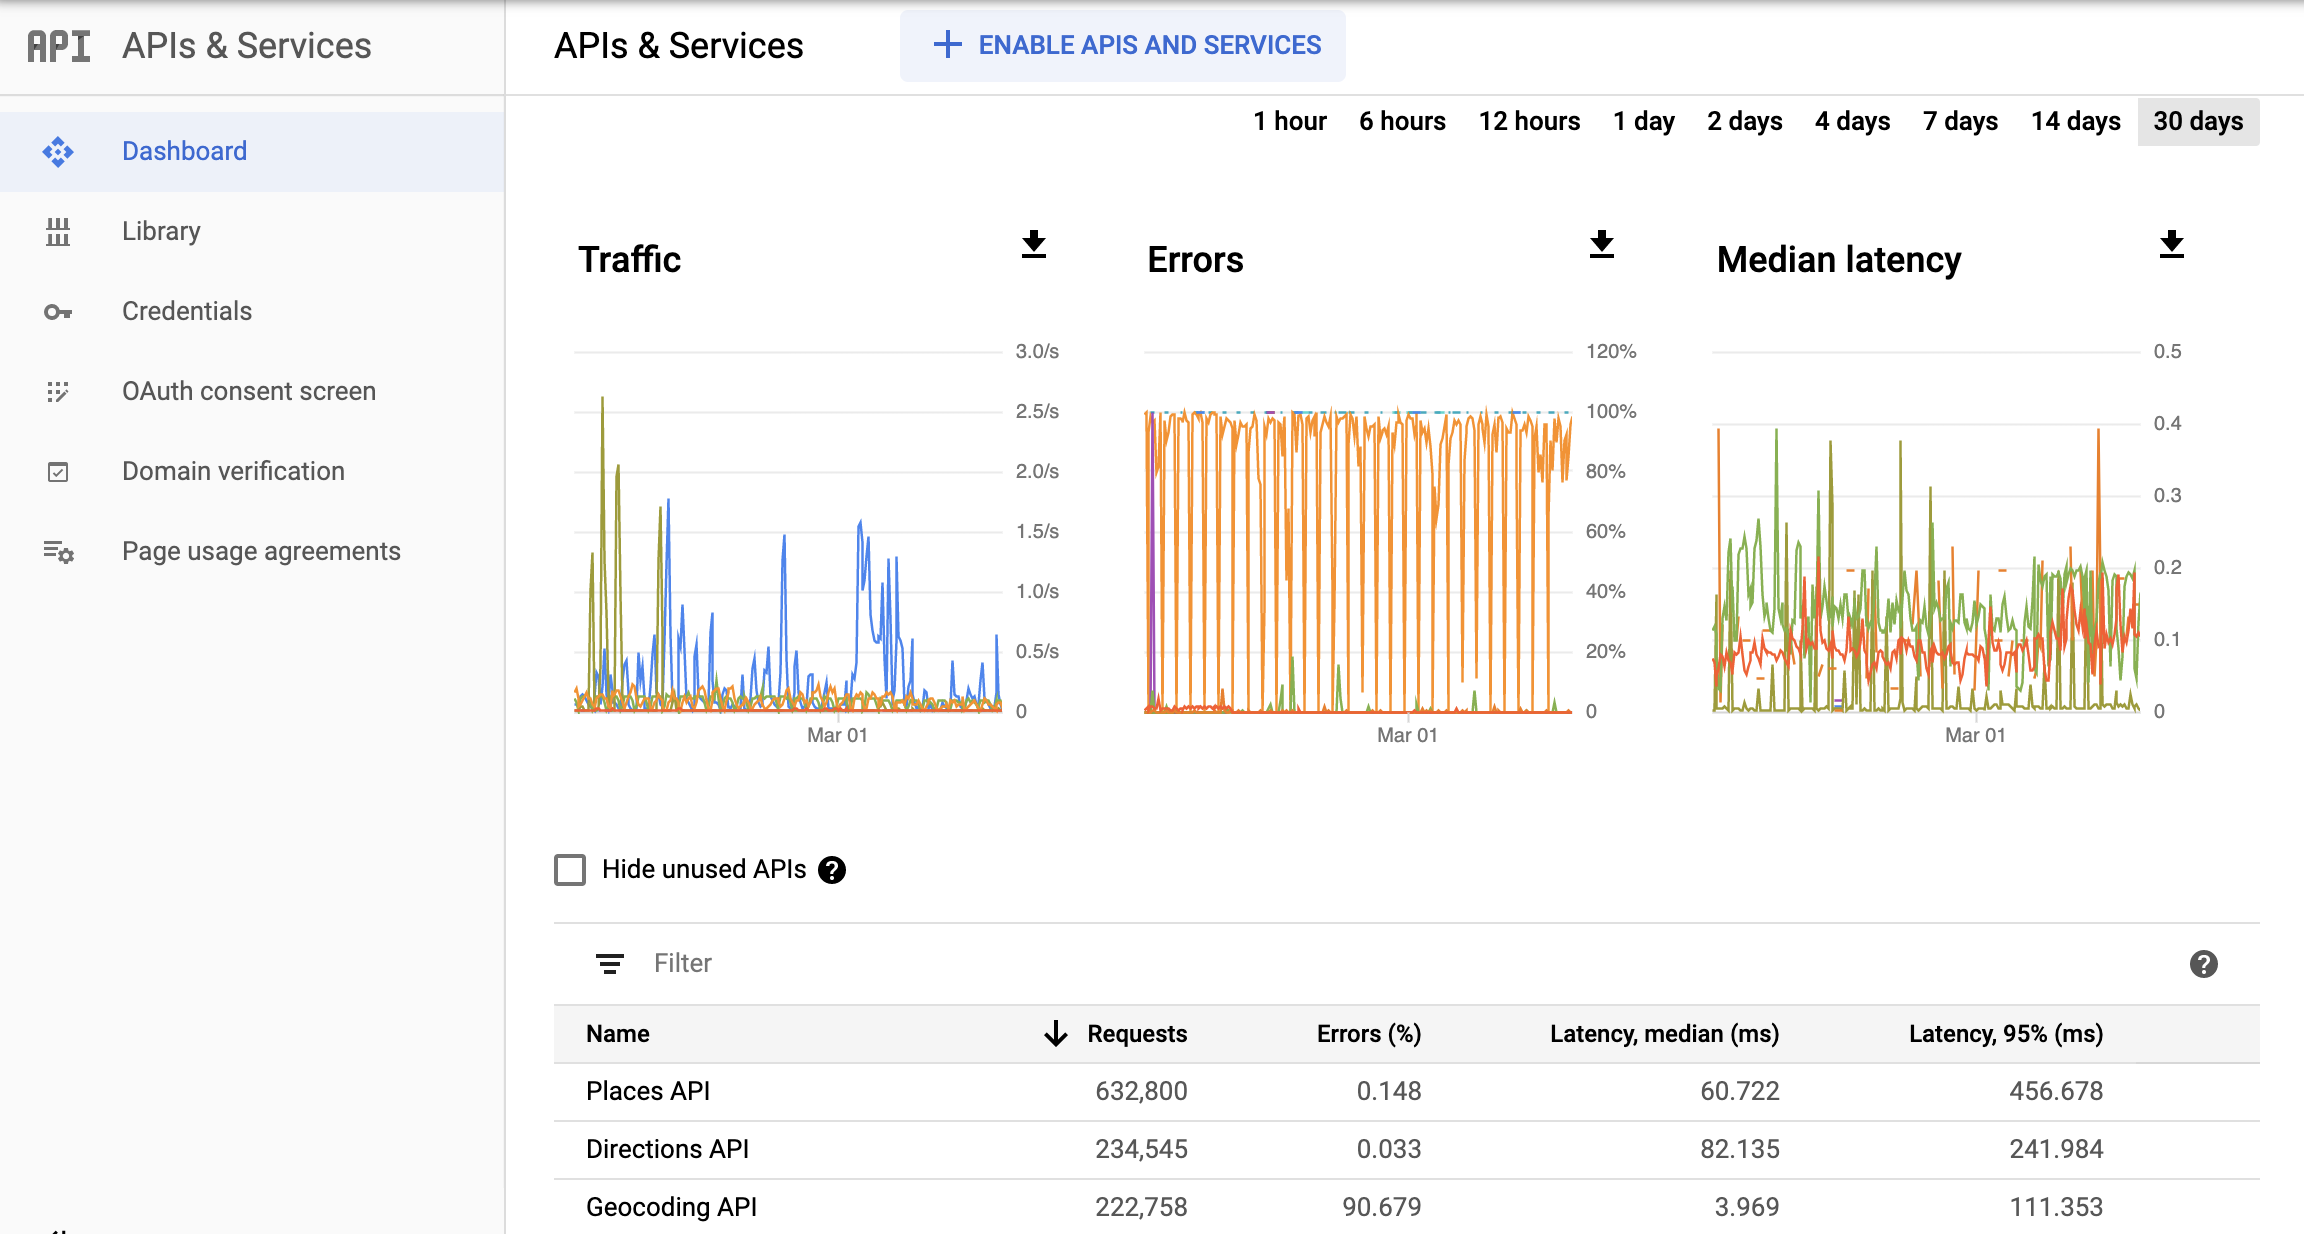 Screenshot halaman Monitoring APIs di Konsol Google Cloud, yang menampilkan dasbor laporan APIs & Services. Laporan ini menampilkan diagram terpisah untuk Traffic, Error, dan Median Latency. Diagram ini
  dapat menampilkan data dari rentang waktu satu jam hingga 30 hari.